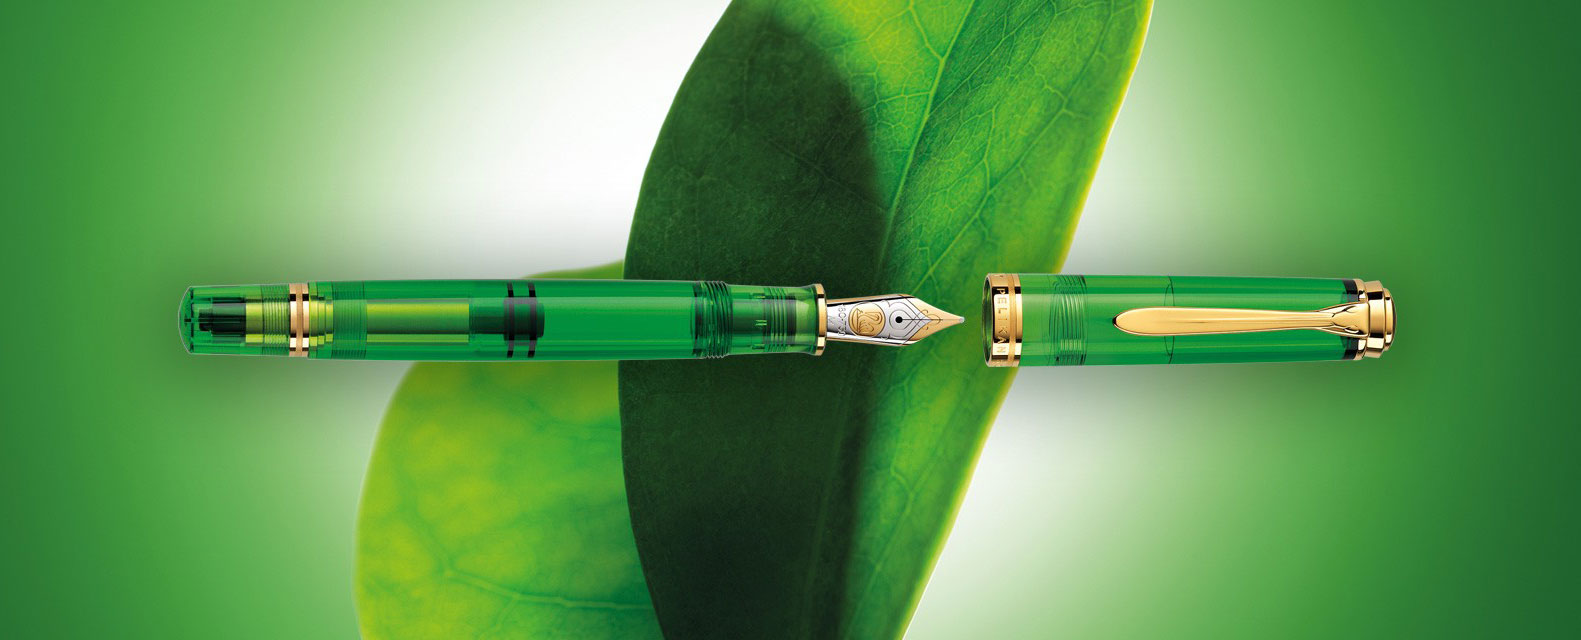 Pelikan Souveran 800 Special Edition Fountain Pen Green Demonstrator